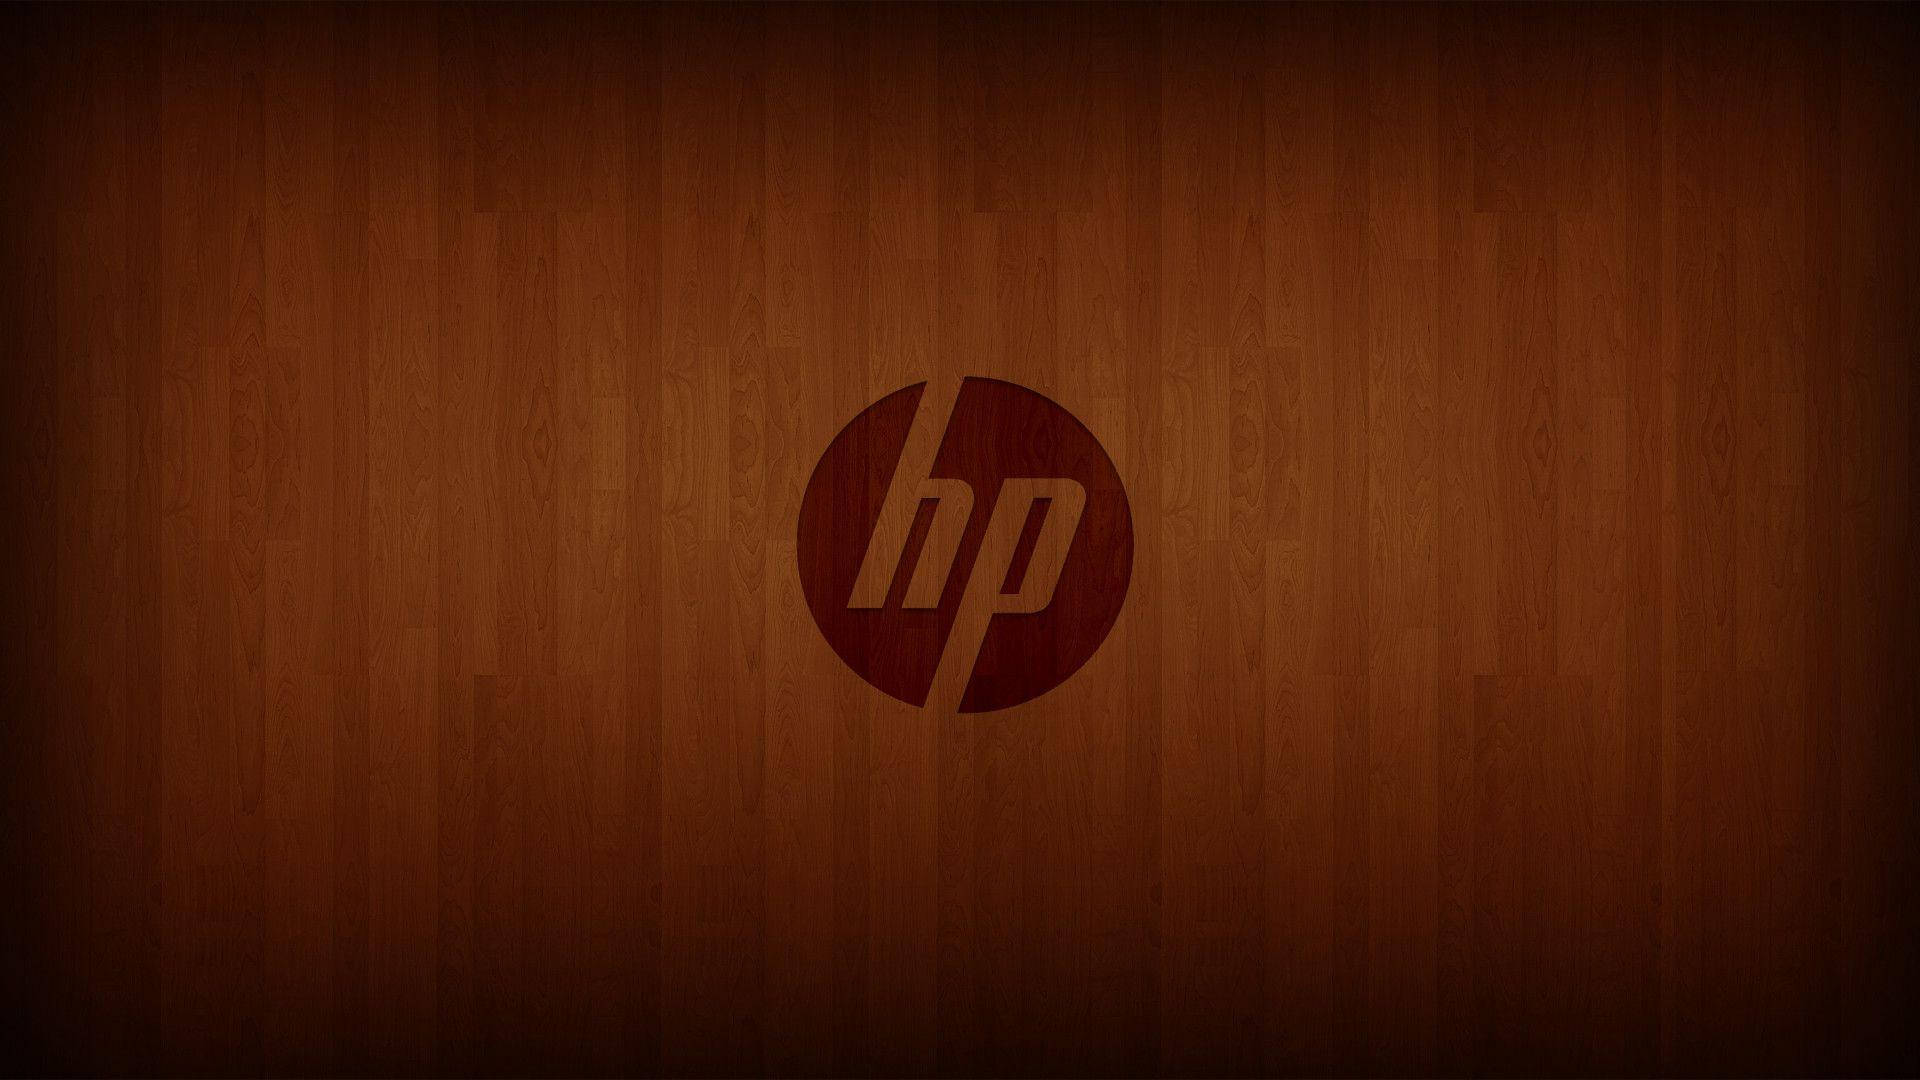 Hp Logo In Vintage Wood Wallpaper